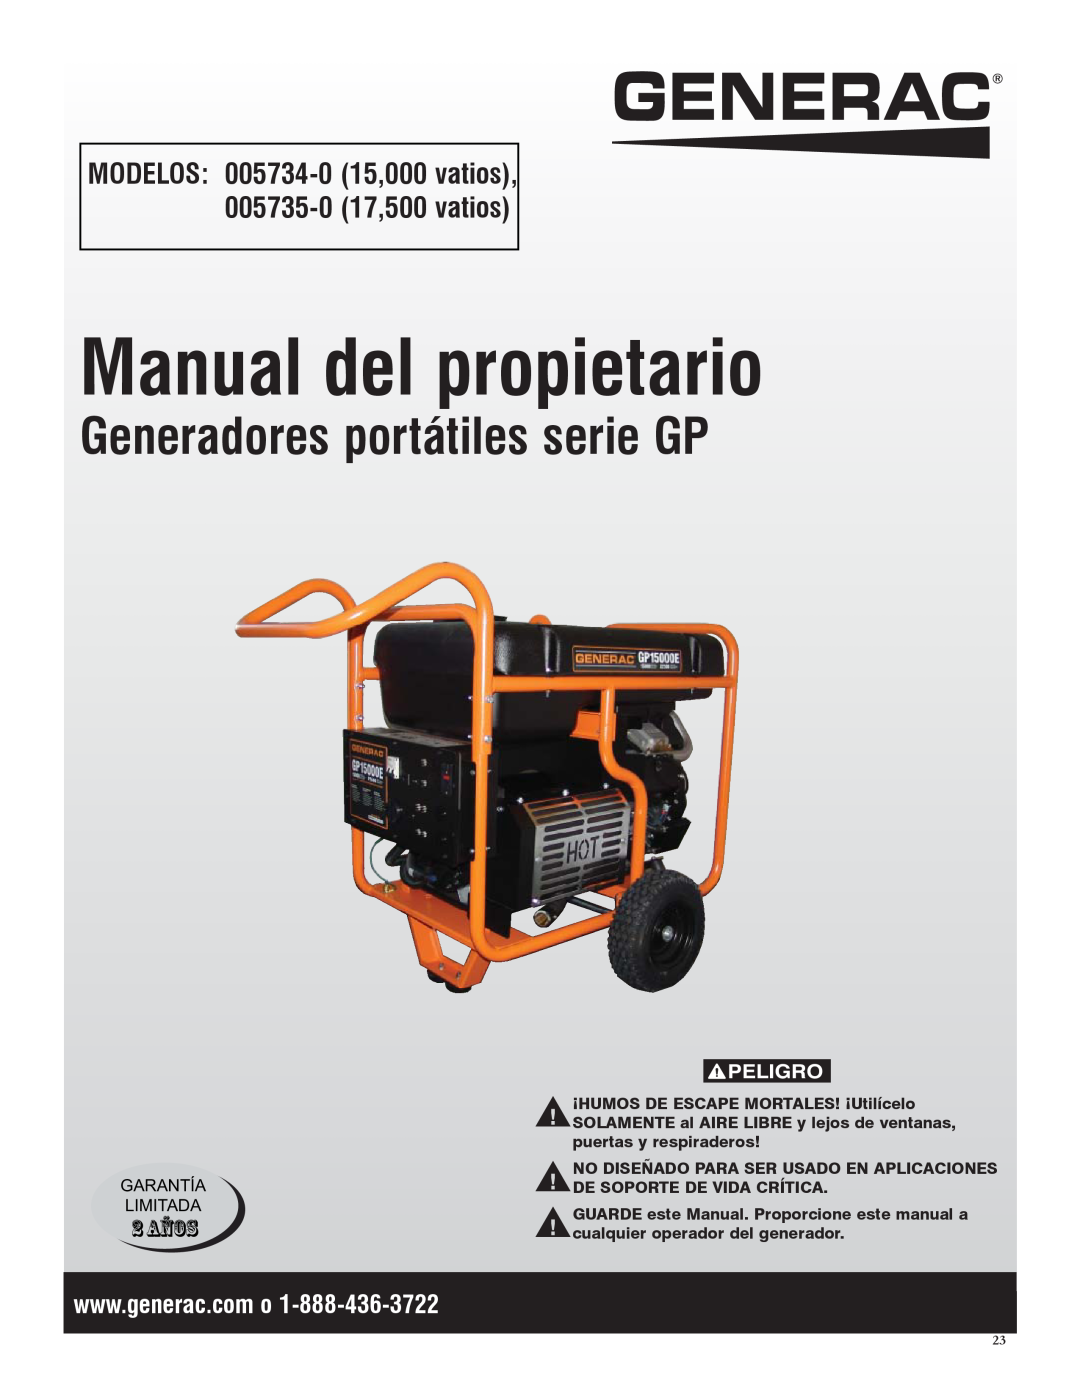 Generac 005735-0, 005734-0 Manual del propietario, Generadores portátiles serie GP, 2 AÑOS, Peligro, Garantía Limitada 